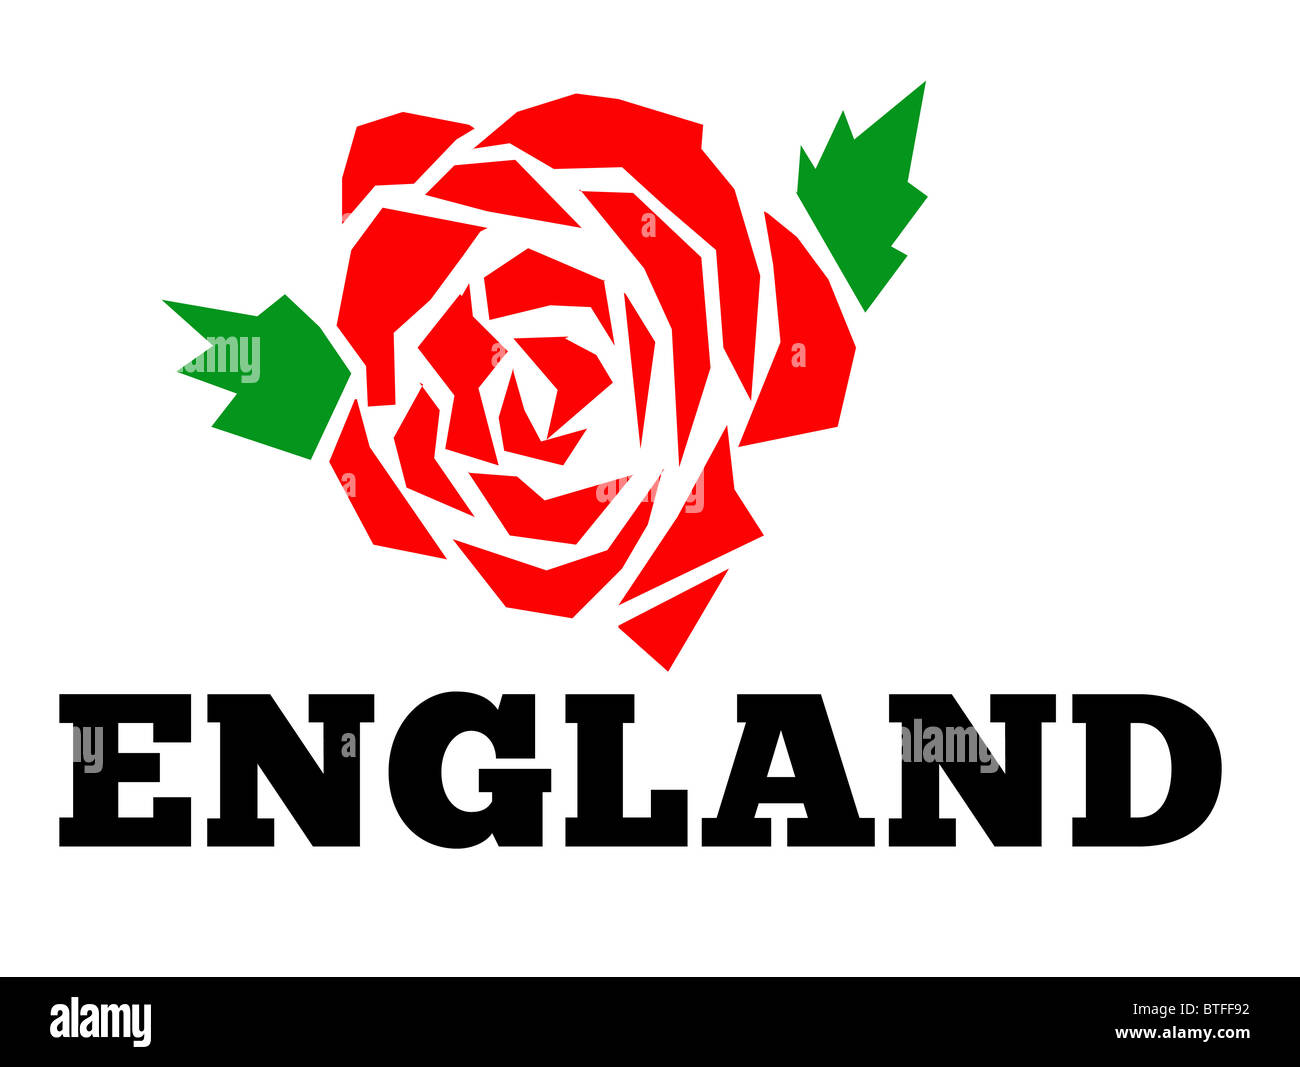 Abbildung von einem roten englischen rose mit Worten "England" isolated on white background Stockfoto